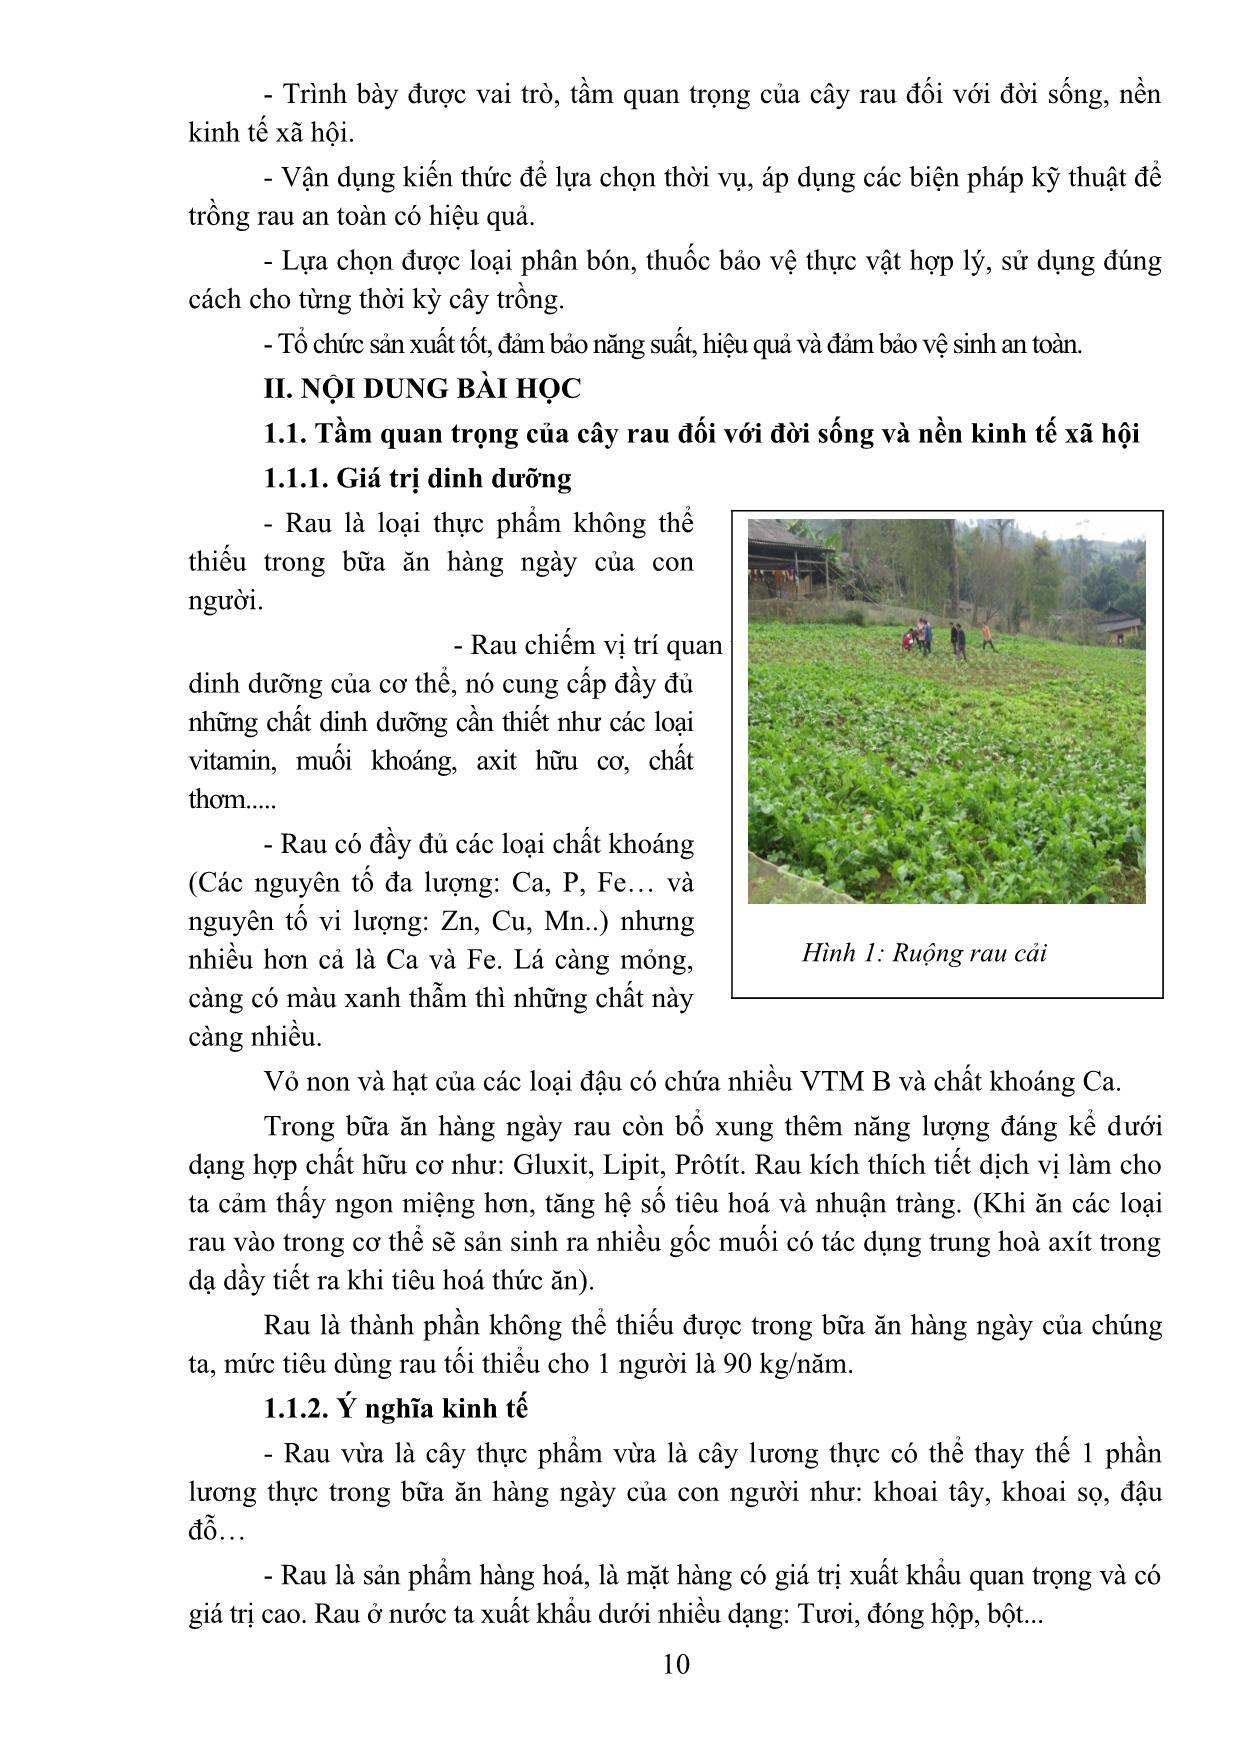 Bài giảng Sản xuất rau an toàn - Đỗ Bích Nga trang 10